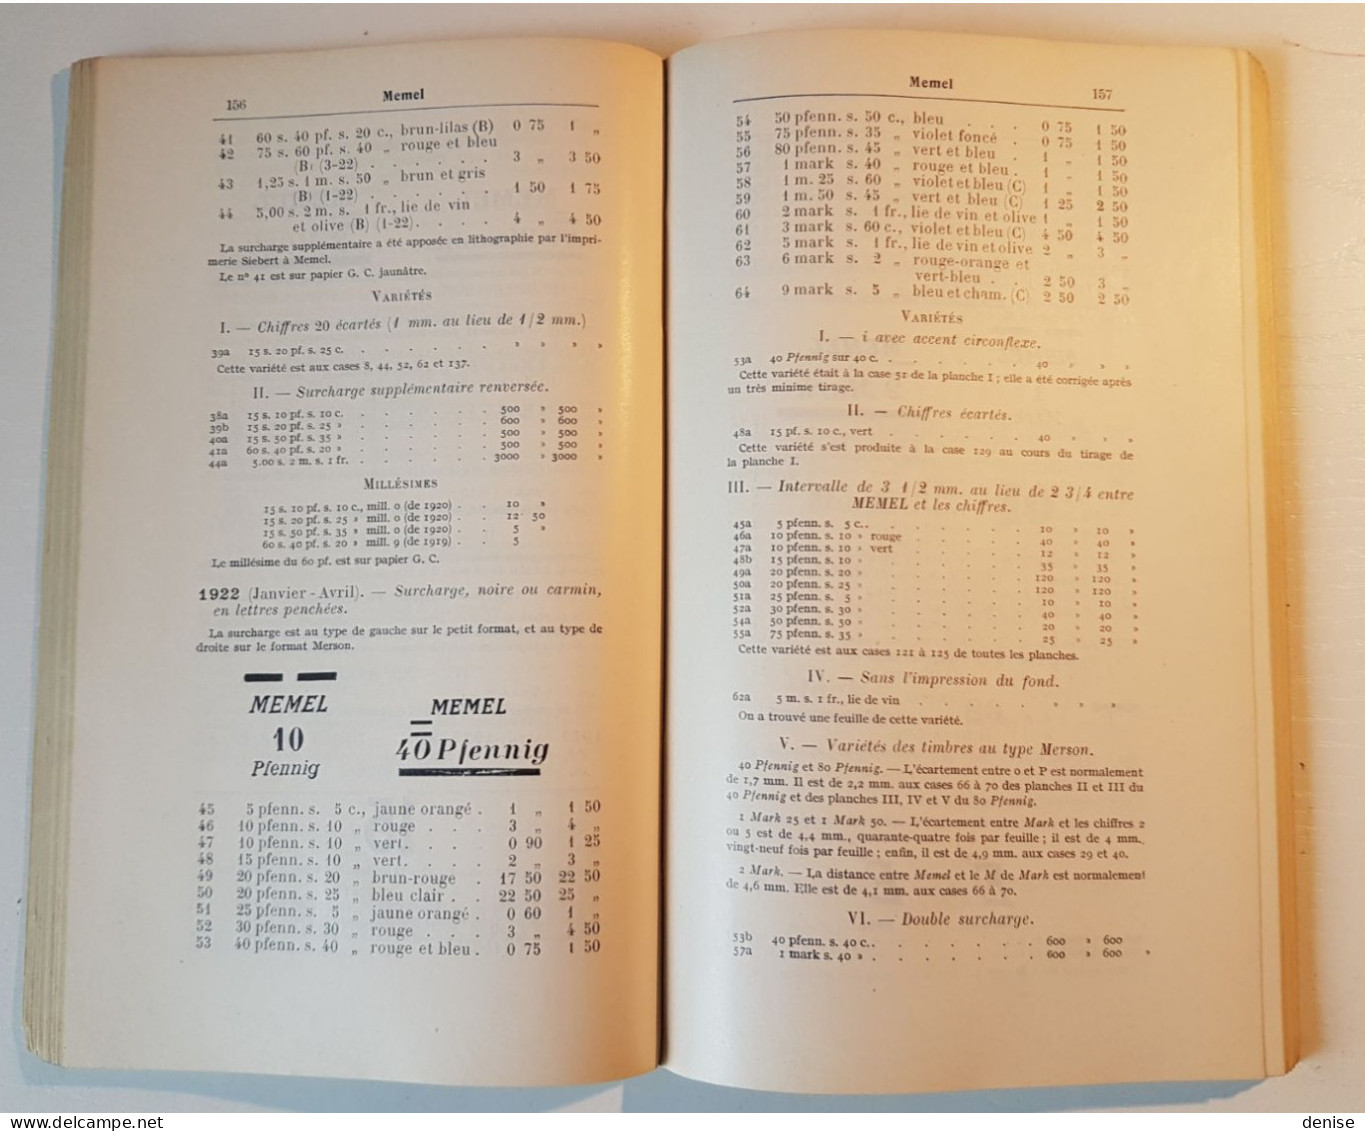 Catalogue Yvert Tome 3 -1940 - Bureaux Français à L'etranger - - France